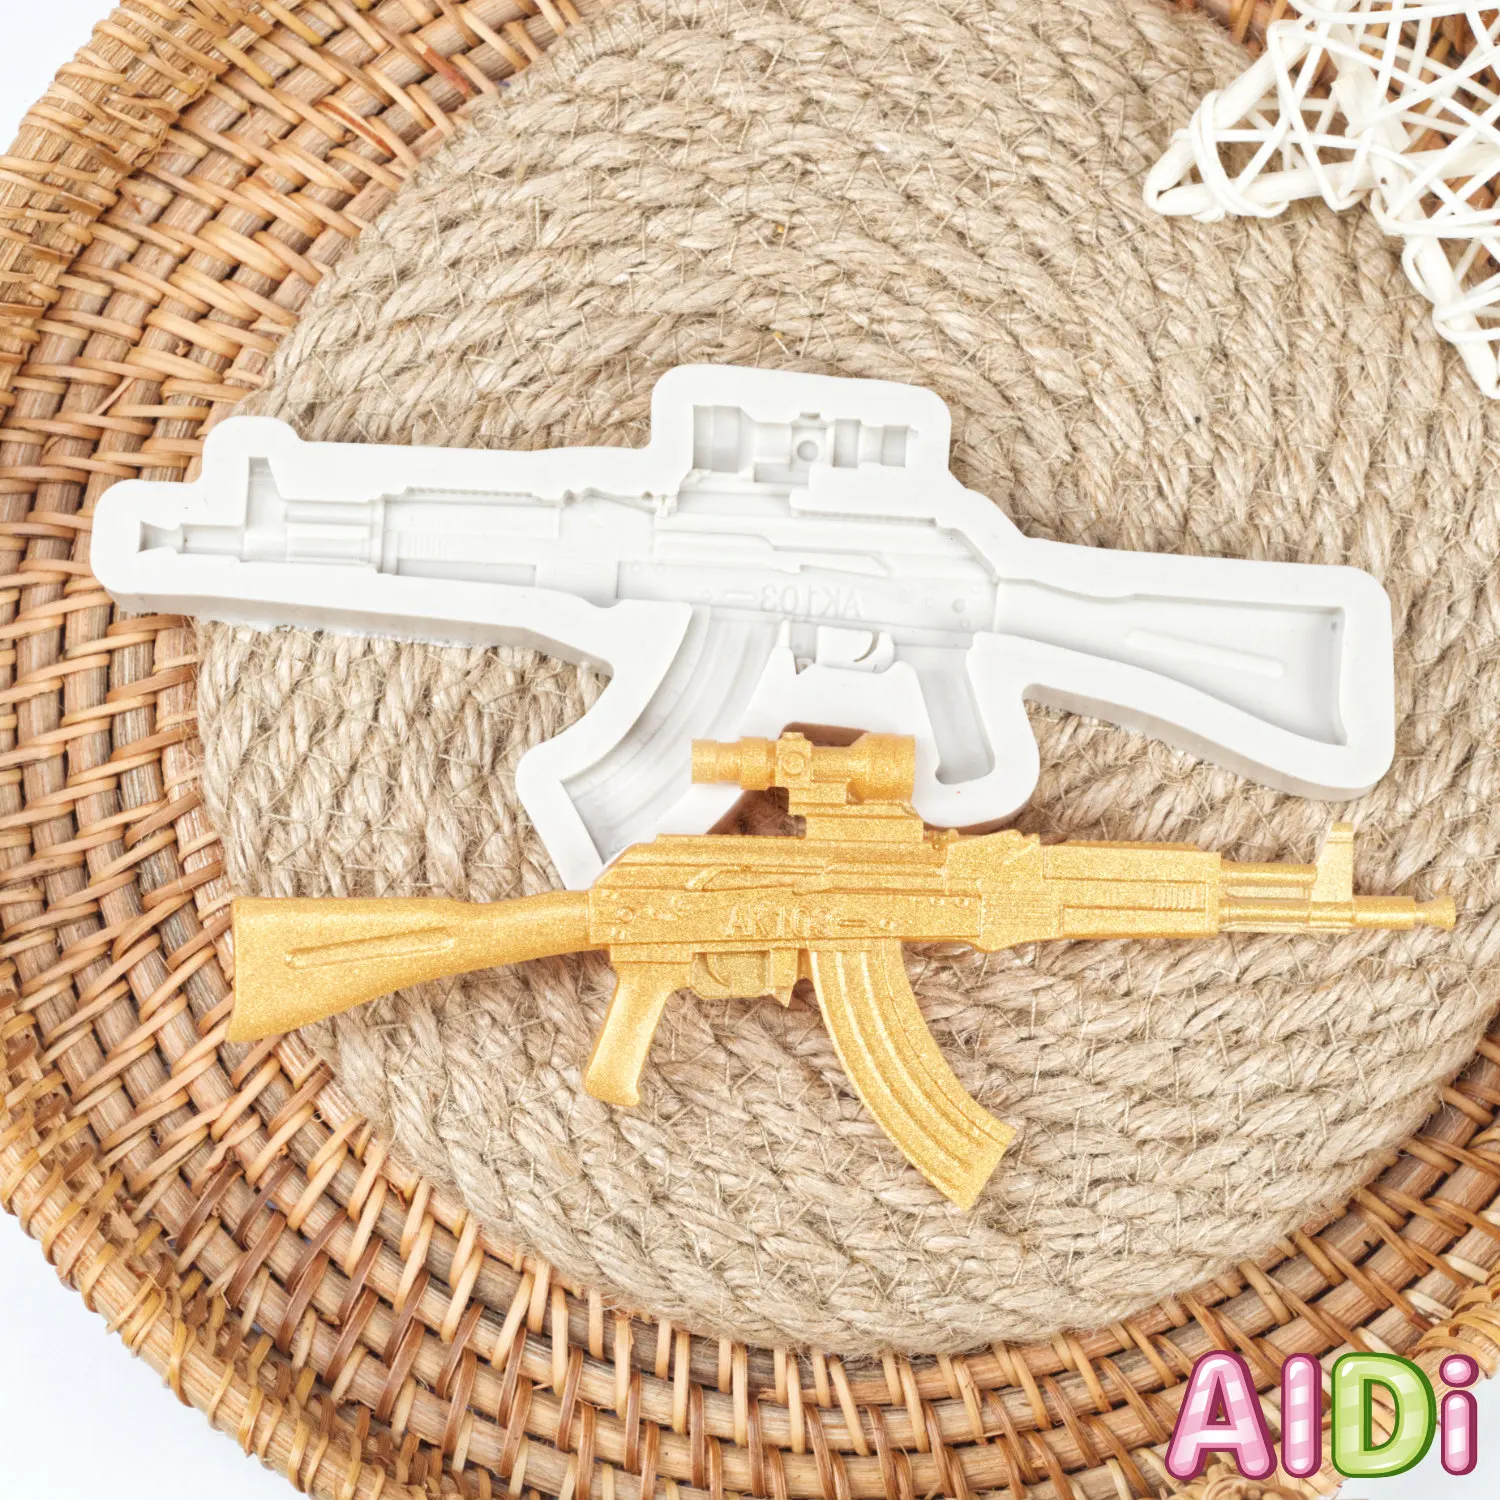 

DIY пистолет AK пистолет форма помадки мыло 3D торт Силиконовая Форма Кекс желе Конфеты Шоколад украшения выпечки формы